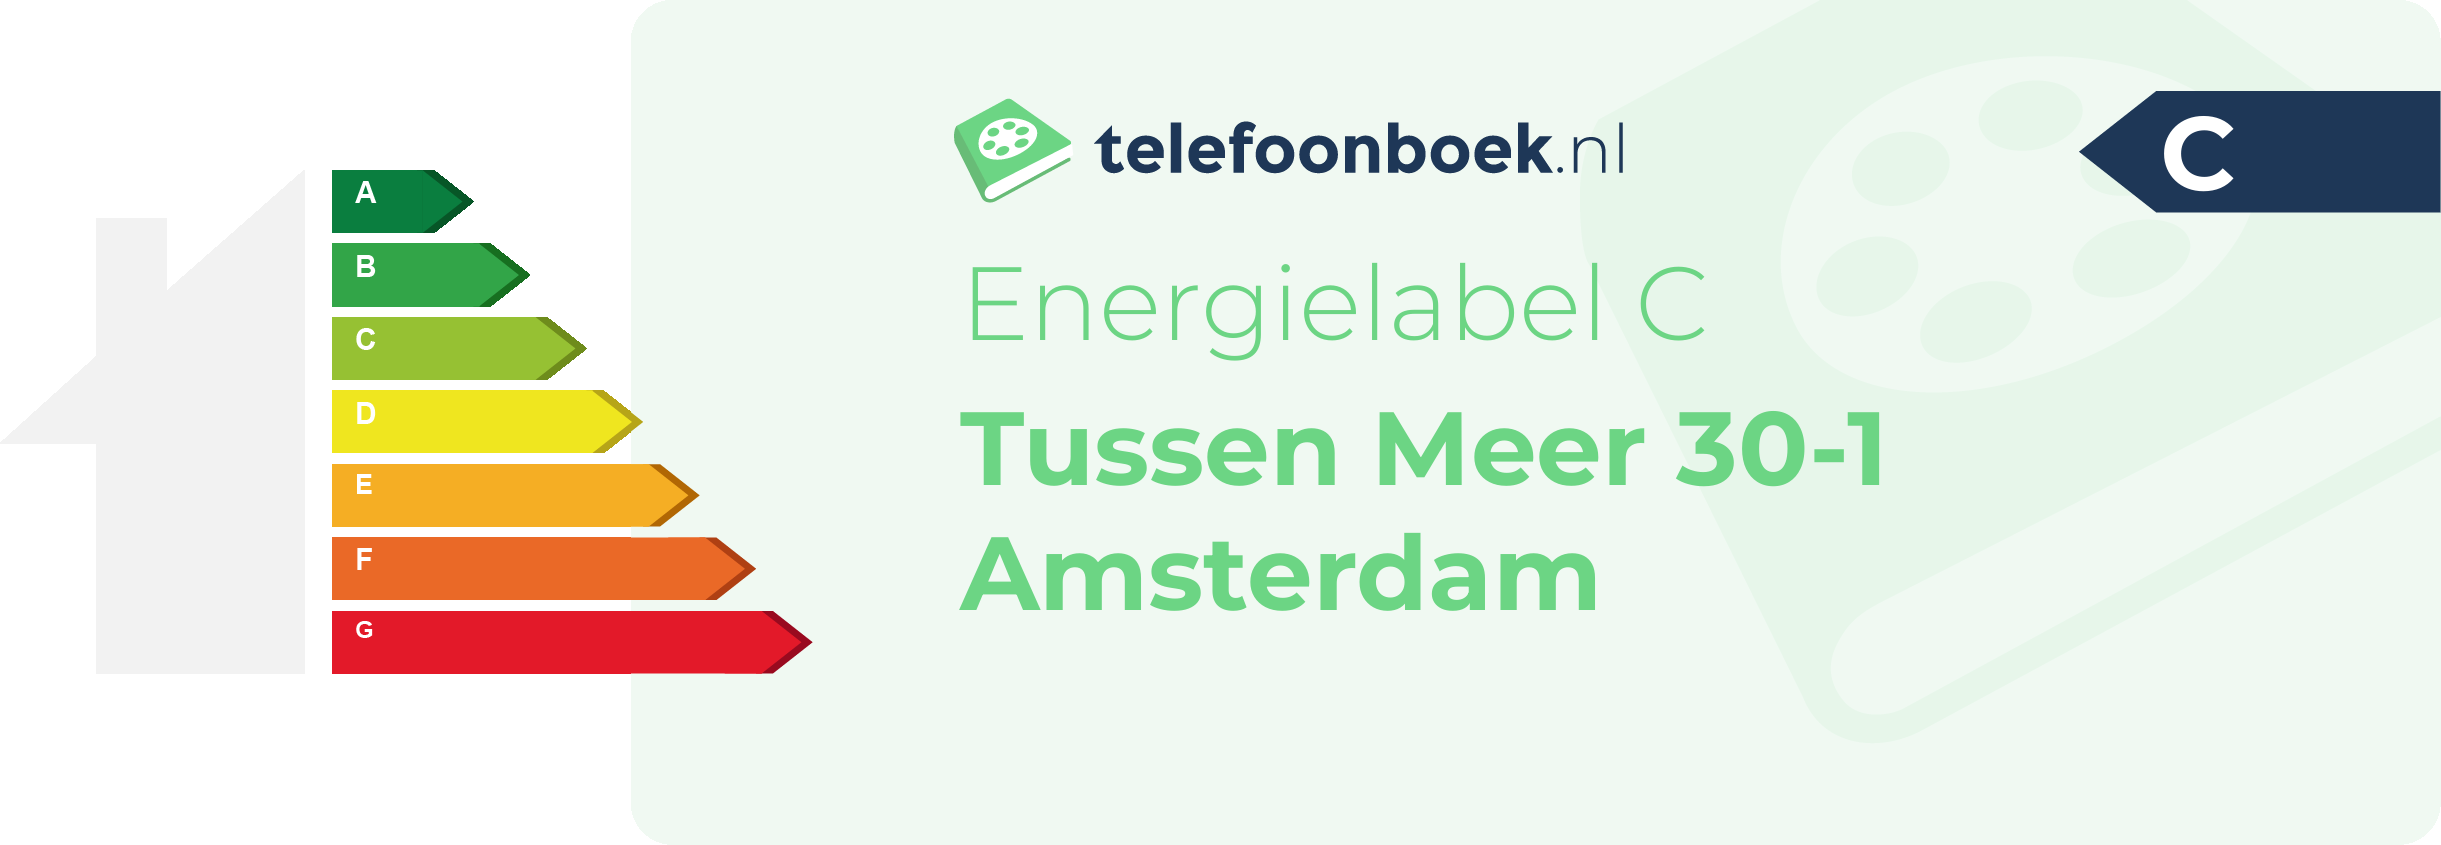 Energielabel Tussen Meer 30-1 Amsterdam